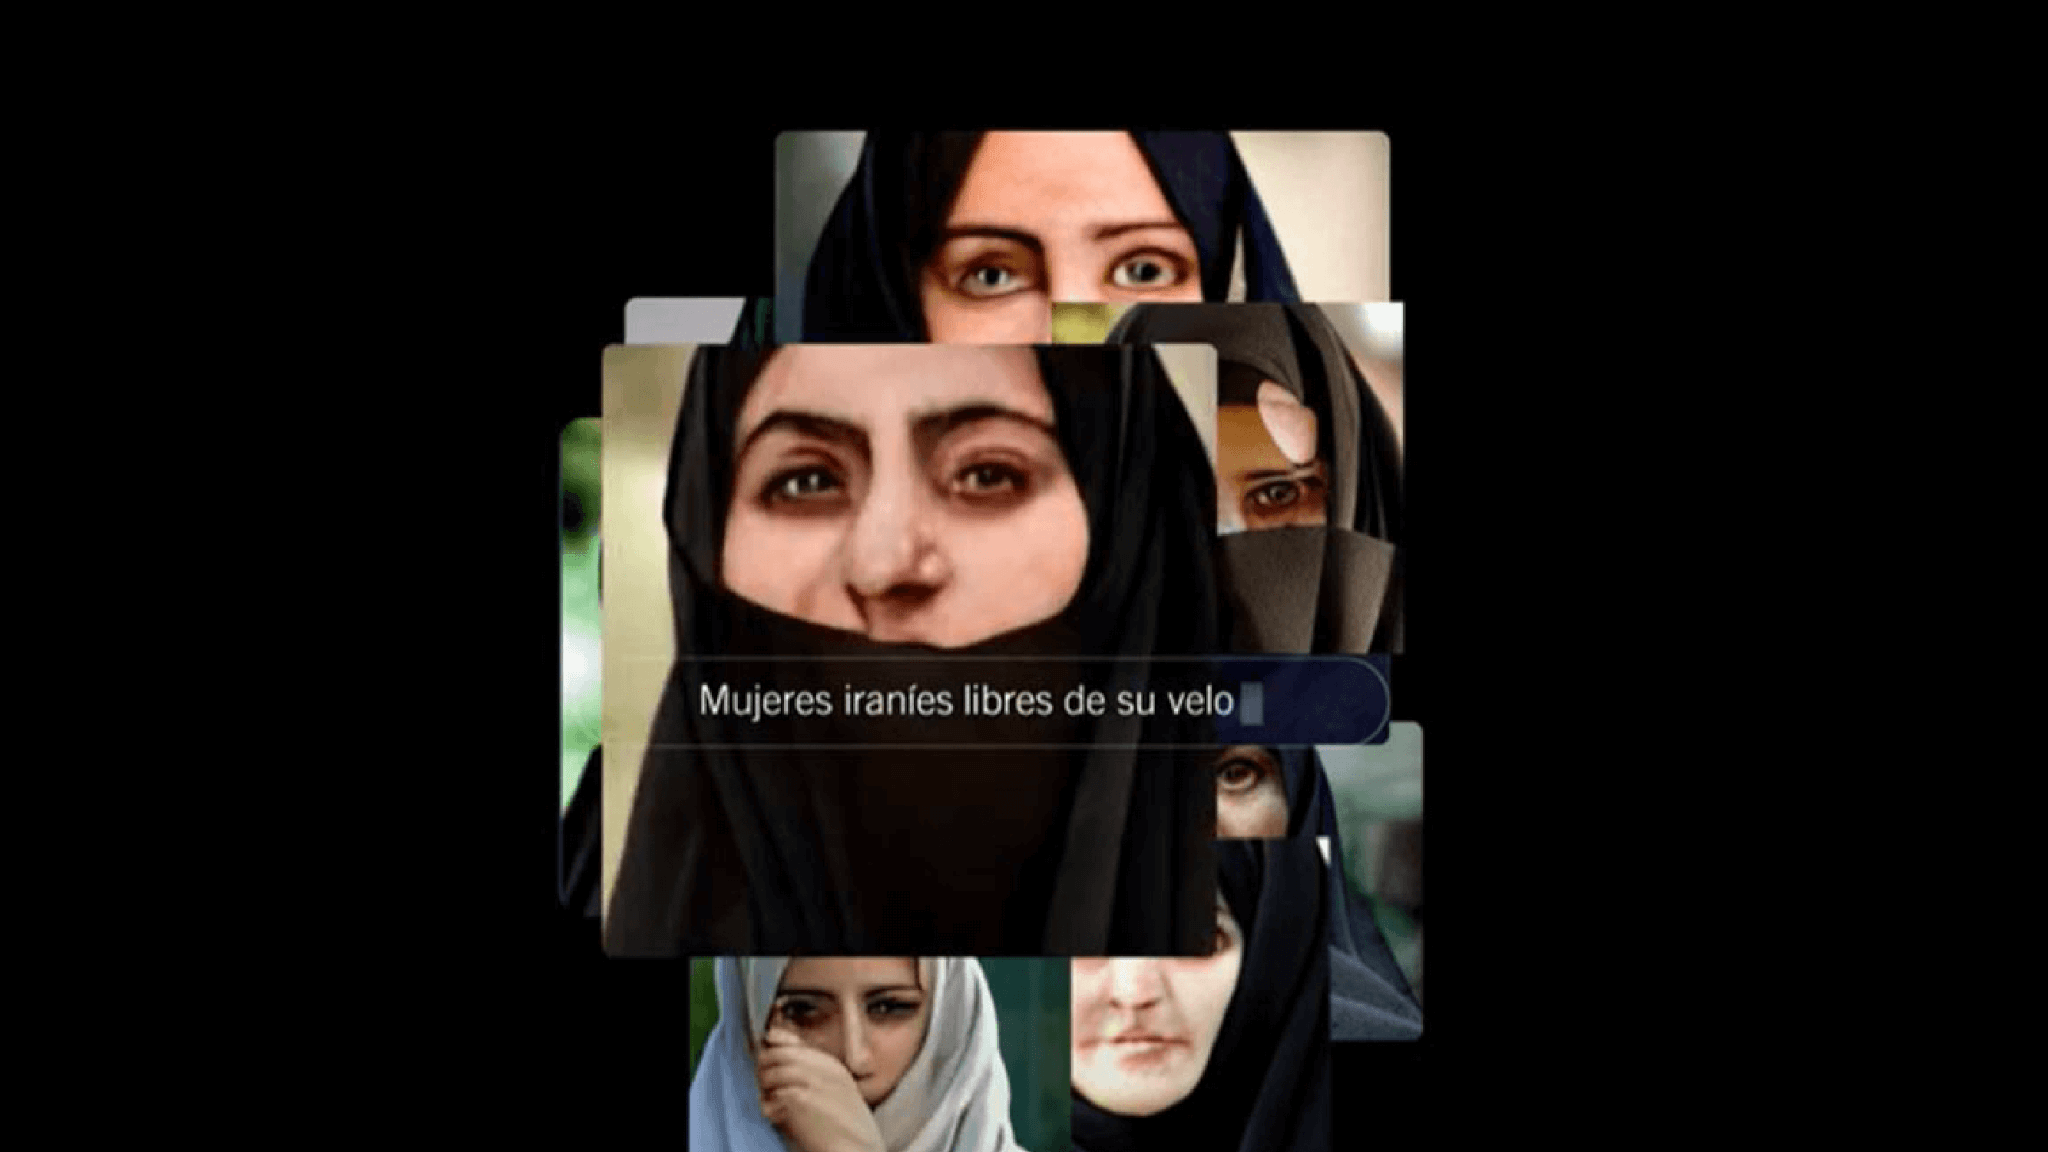 Imágenes de mujeres iraníes con velo con la barra de búsqueda adelante que dice "mujeres iraníes sin velo".